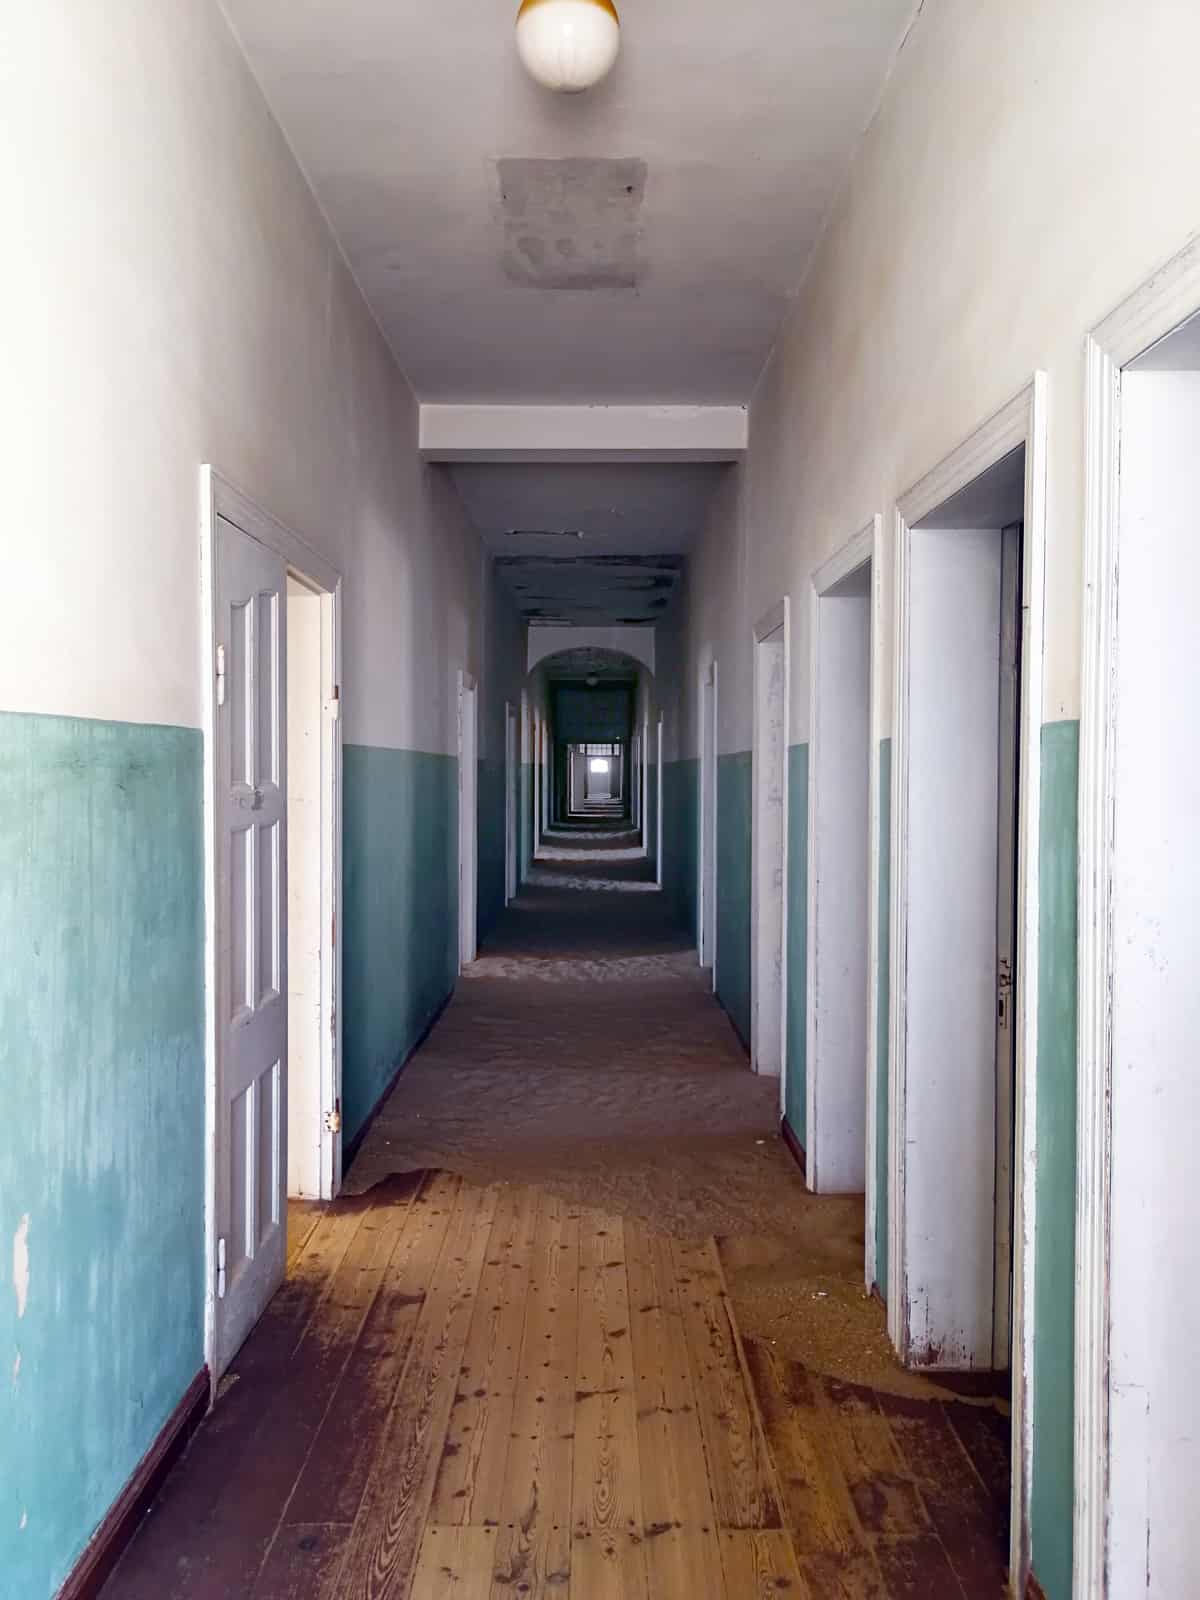 The abandoned Hospital in Kolmanskop